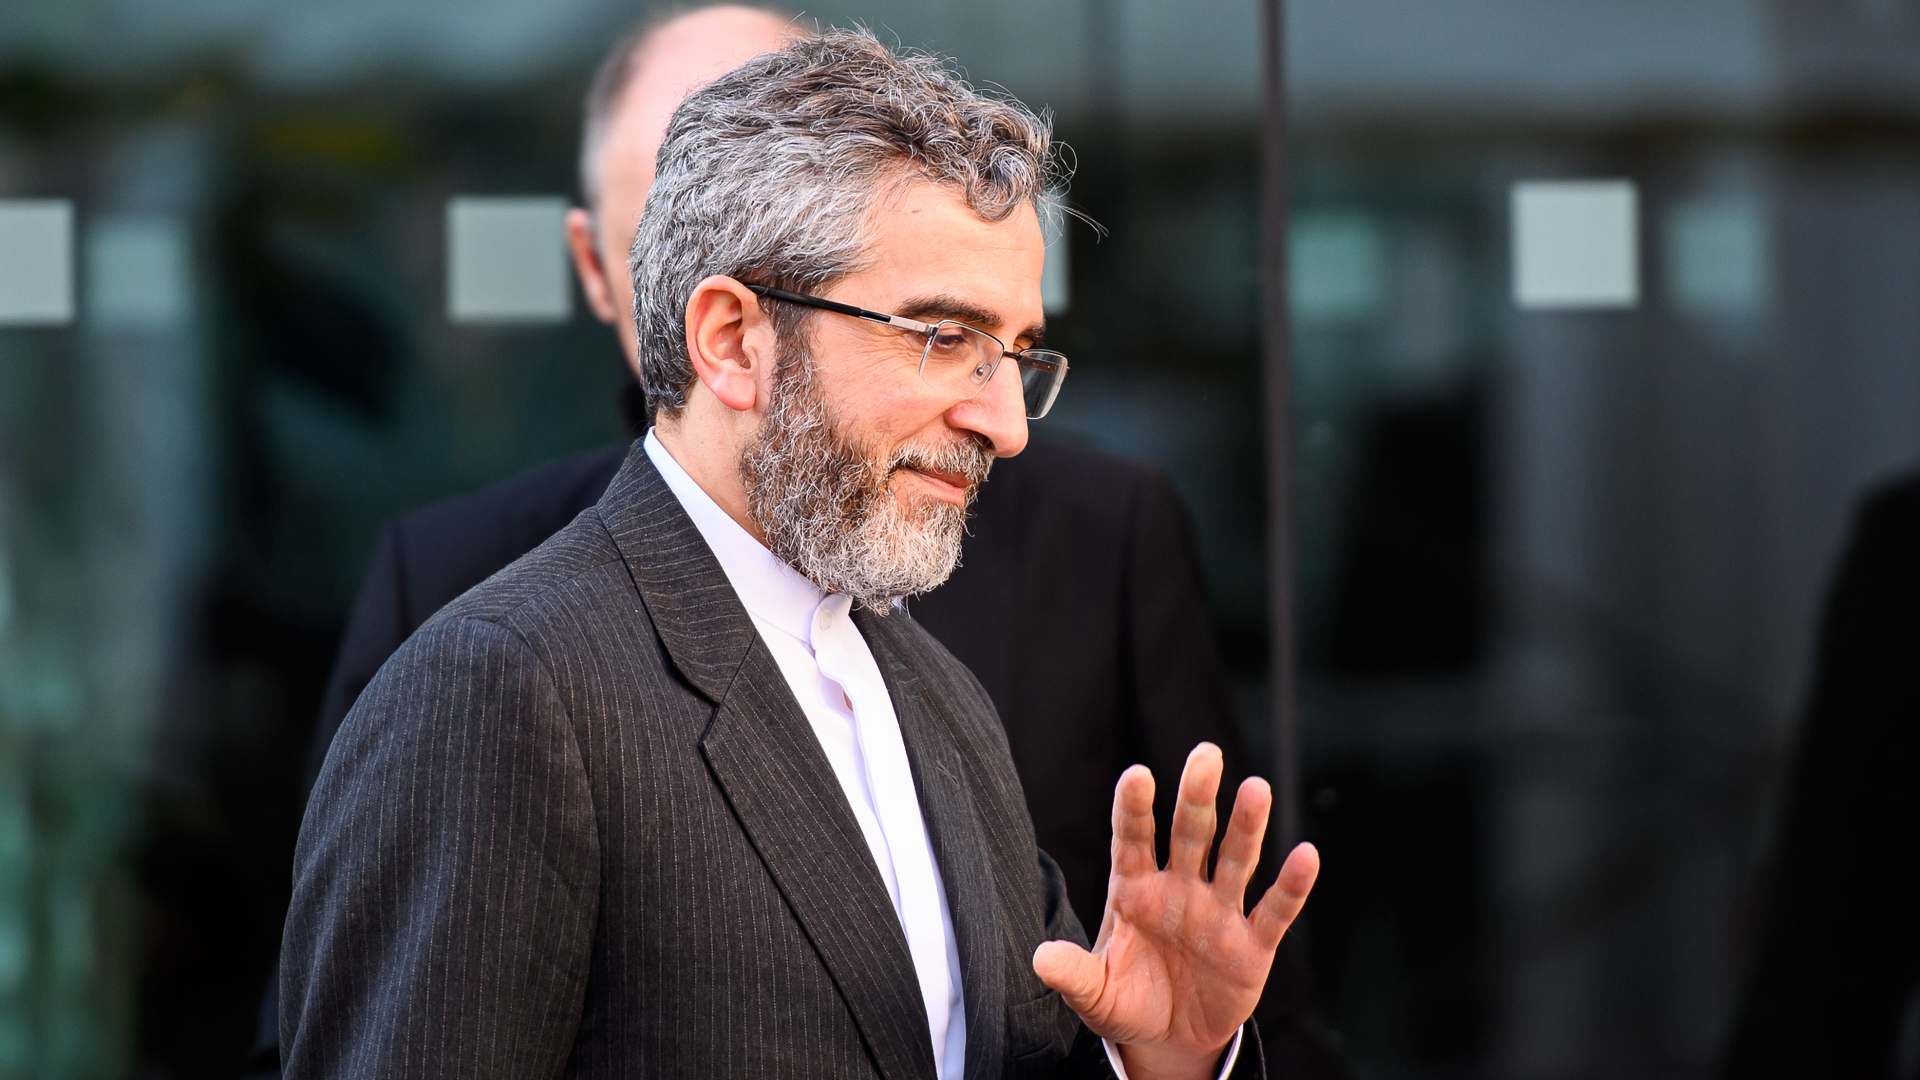 Der iranische Unterhändler bei den Atomverhandlungen, Ali Bagheri Kani, bei den Gesprächen in Wien | EPA